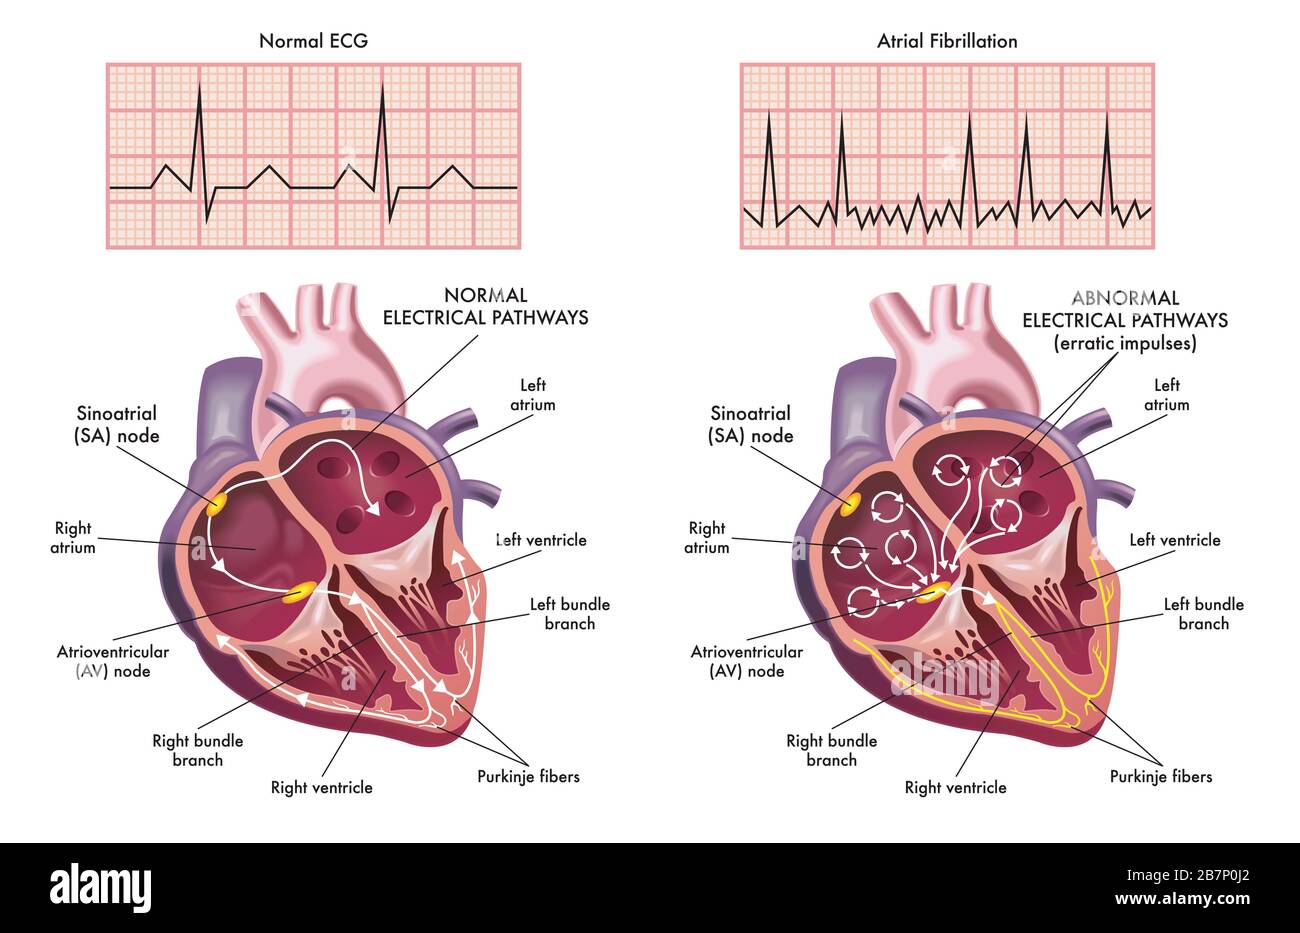 Illustrazione medica che mostra i sintomi di un cuore con fibrillazione atriale rispetto a quello normale. Foto Stock